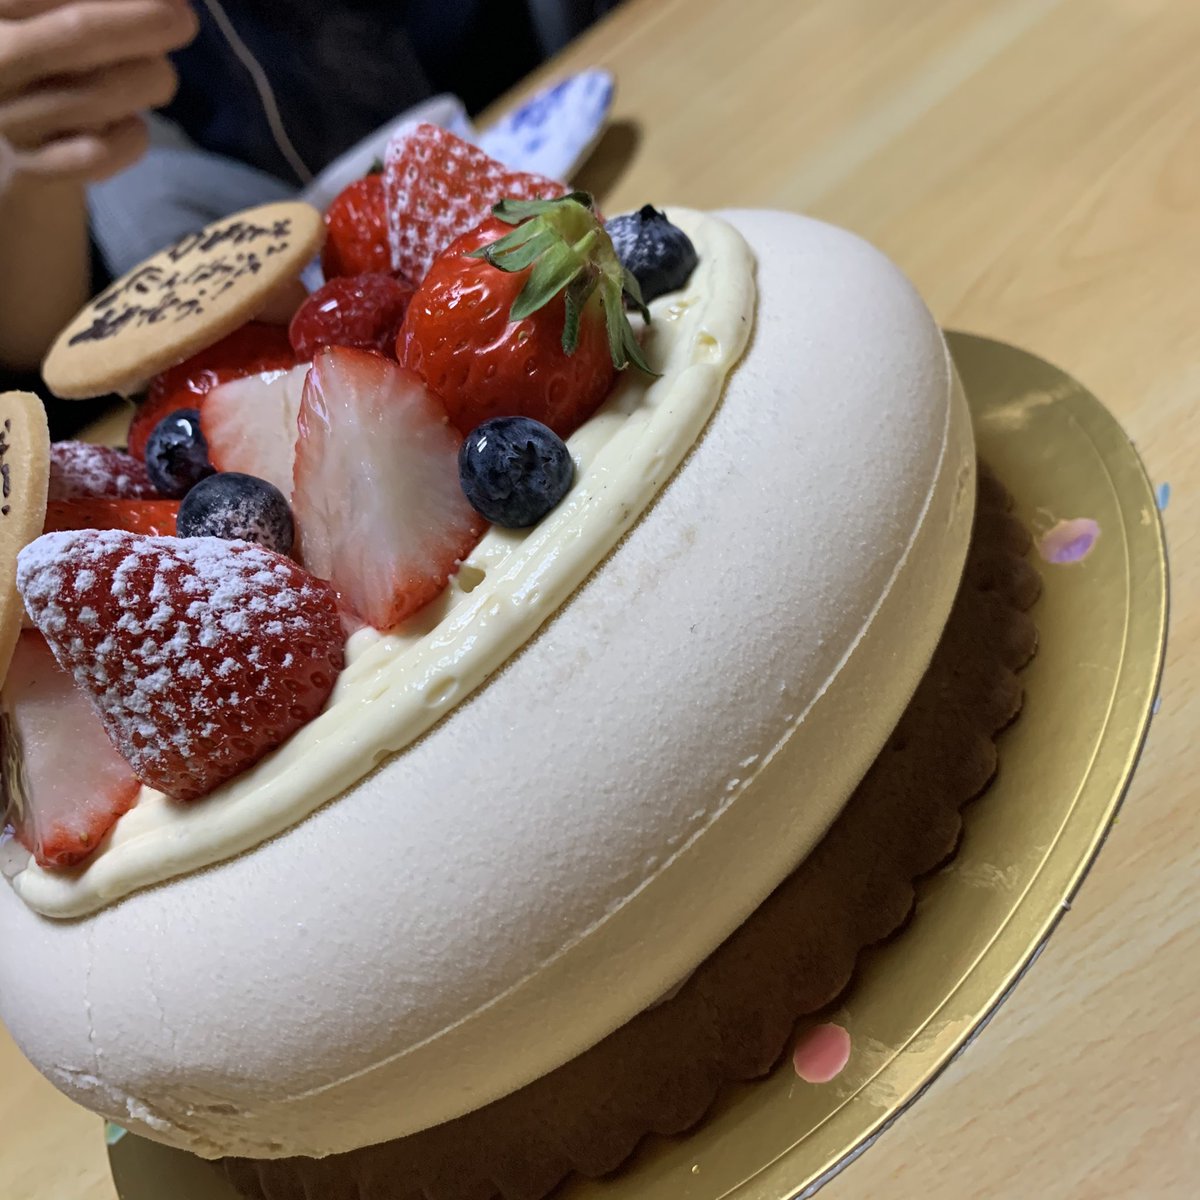 Ir広島 チーム広島 誕生日ケーキですが ストーン の形に作ってくださいました ジャスミン茶のクリームに ベリーとキャラメルナッツのクランチクッキーの層になっていて 最高に美味しいケーキでした セレステさんありがとうございました